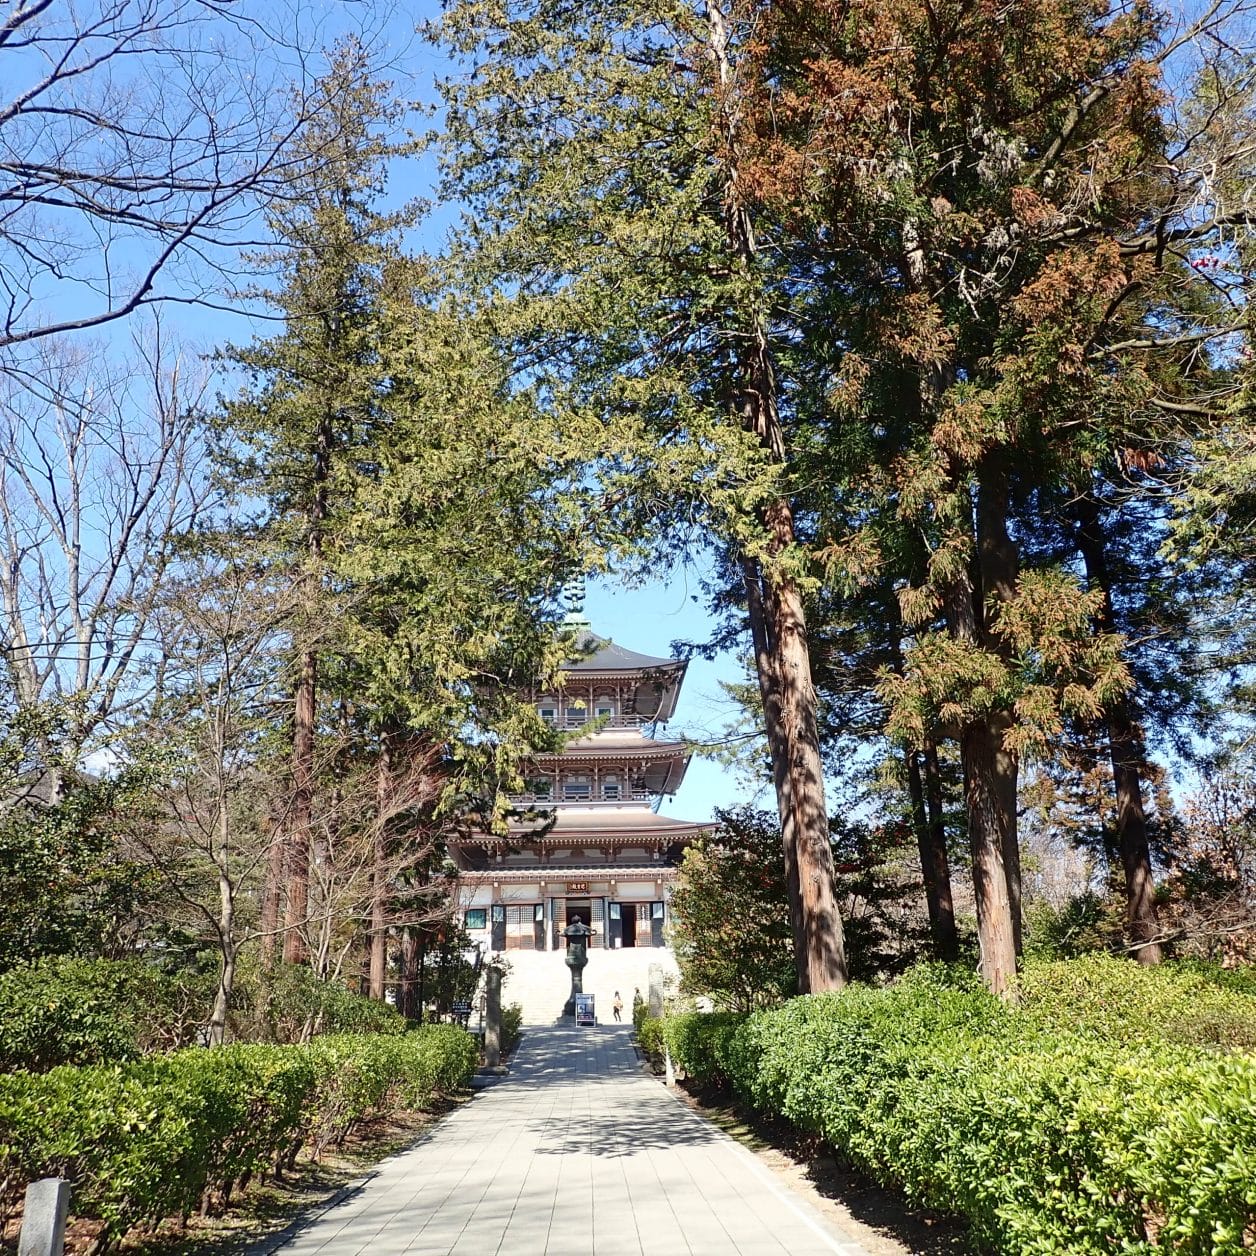 善光寺の境内にある三重塔日本忠霊殿・善光寺資料館